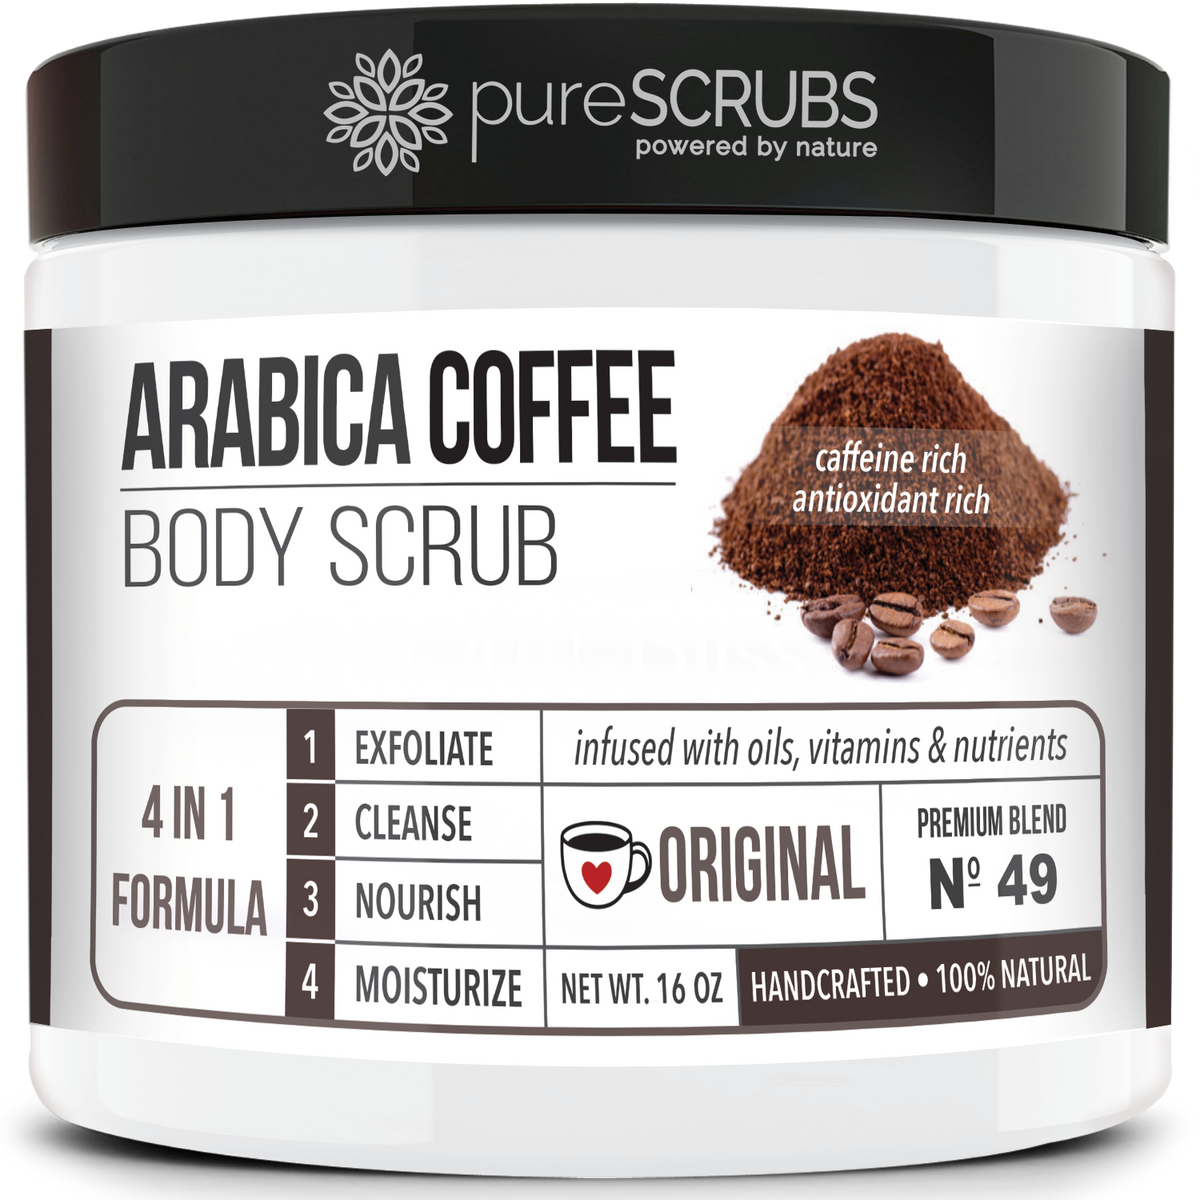 Original Body Scrub / Arabica Coffee / Premium Blend #49